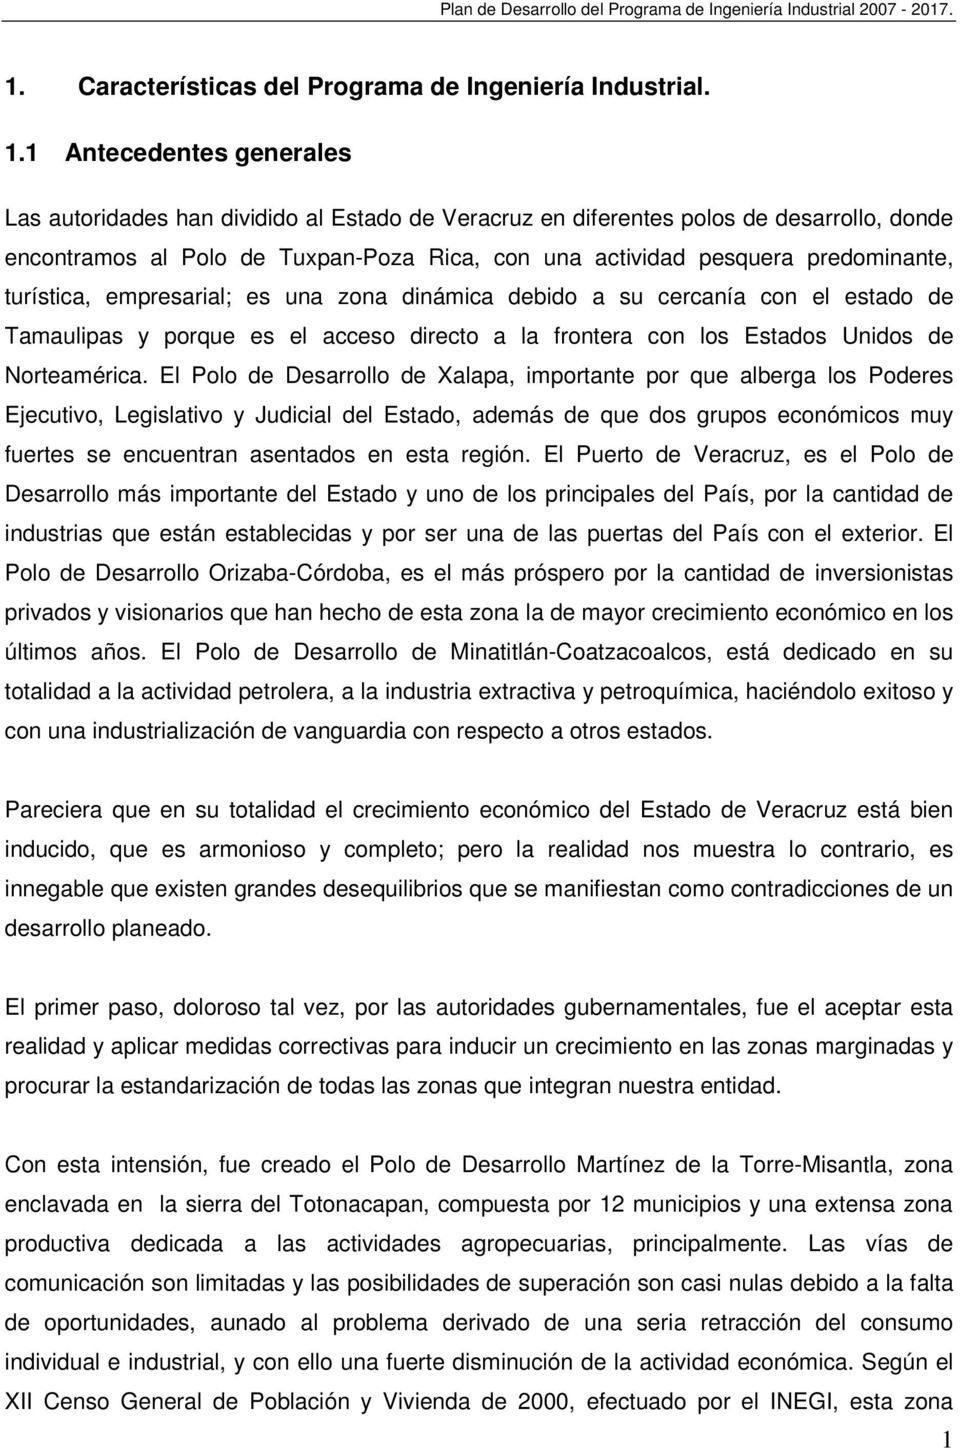 1 Antecedentes generales Las autoridades han dividido al Estado de Veracruz en diferentes polos de desarrollo, donde encontramos al Polo de Tuxpan-Poza Rica, con una actividad pesquera predominante,